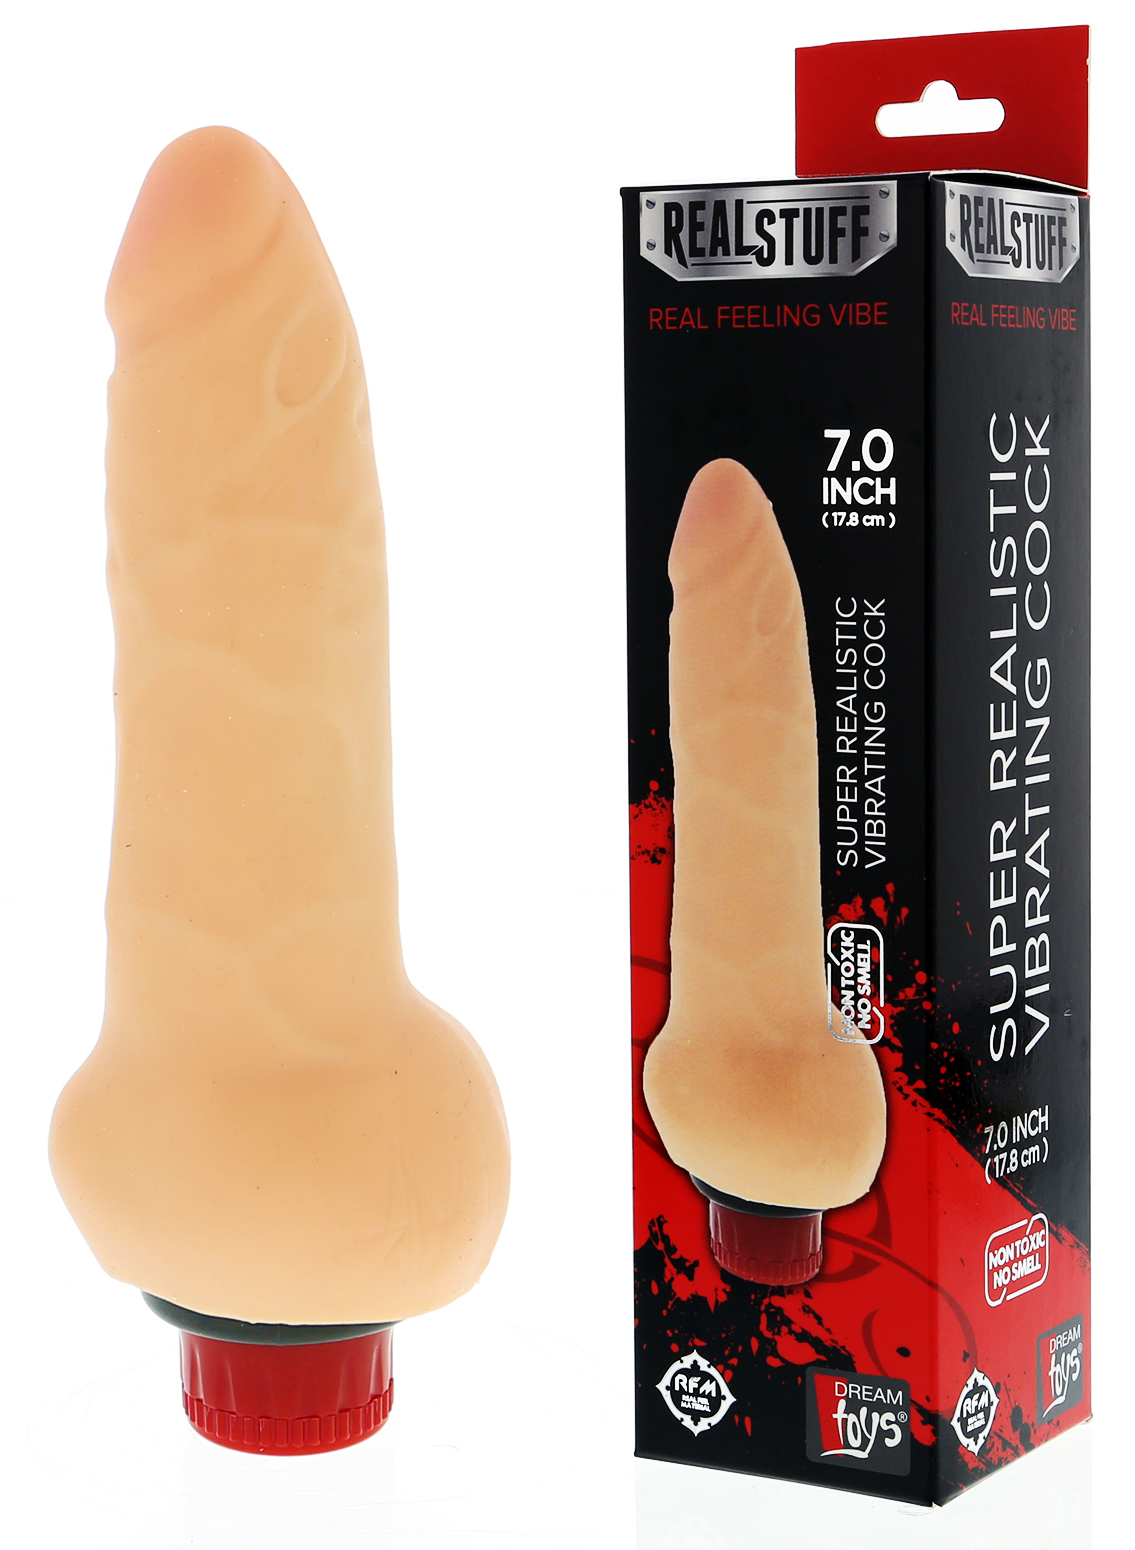 RealStuff 7" Super Realistic Vibrating Cock